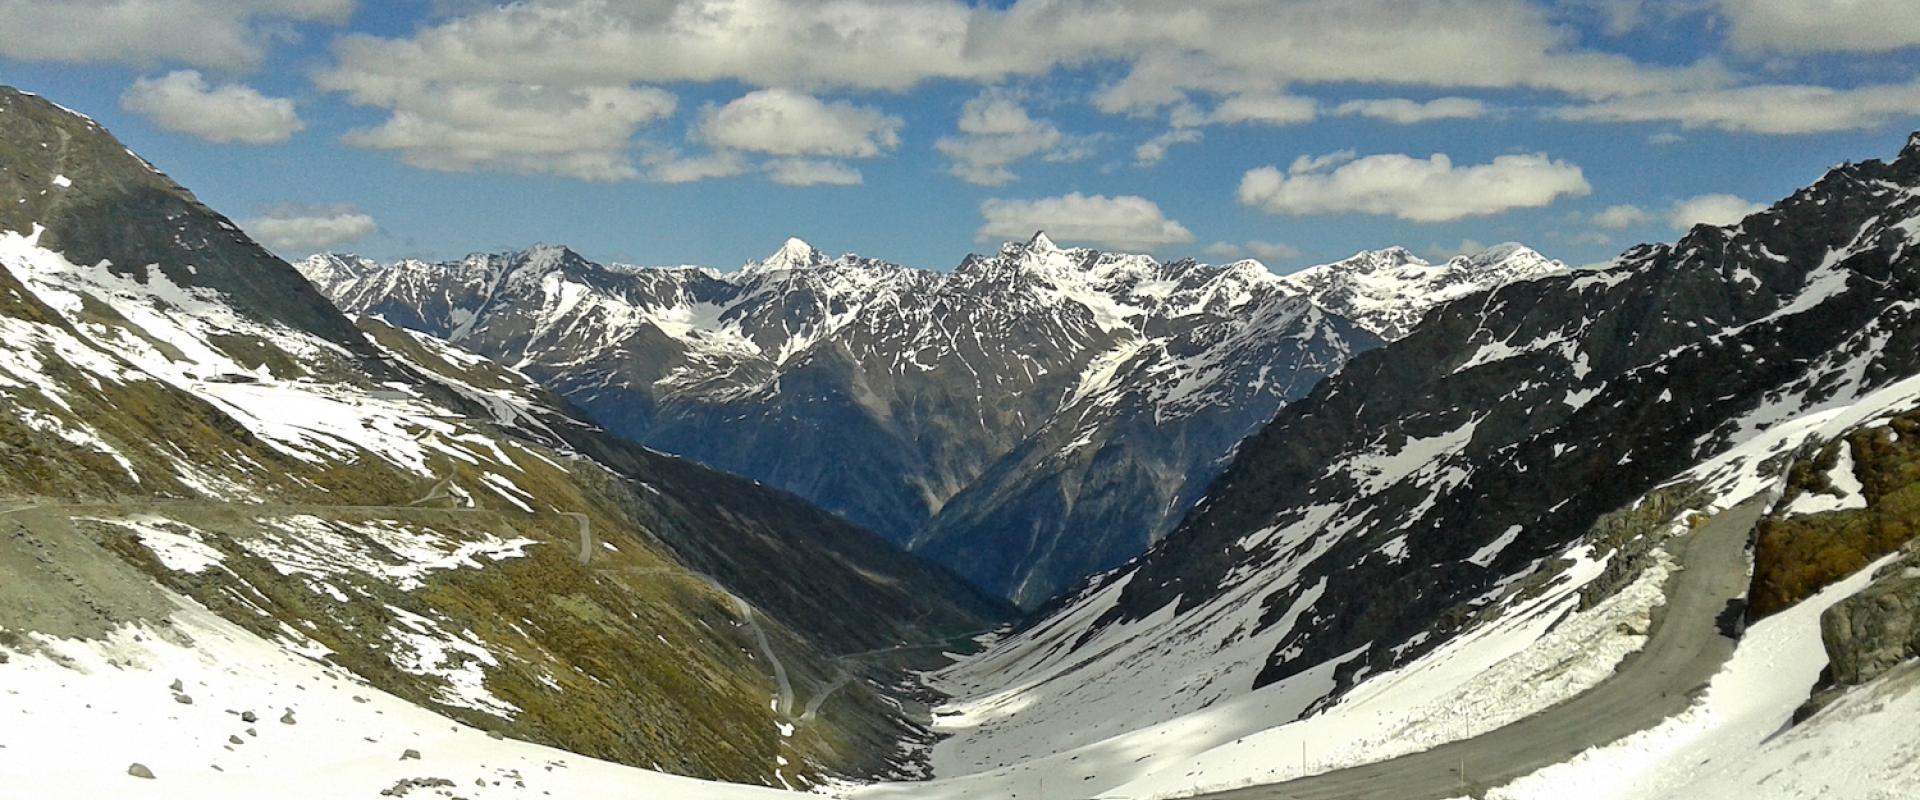 Ötztal Gletscher, mit Blick auf umliegender Berglandschaft